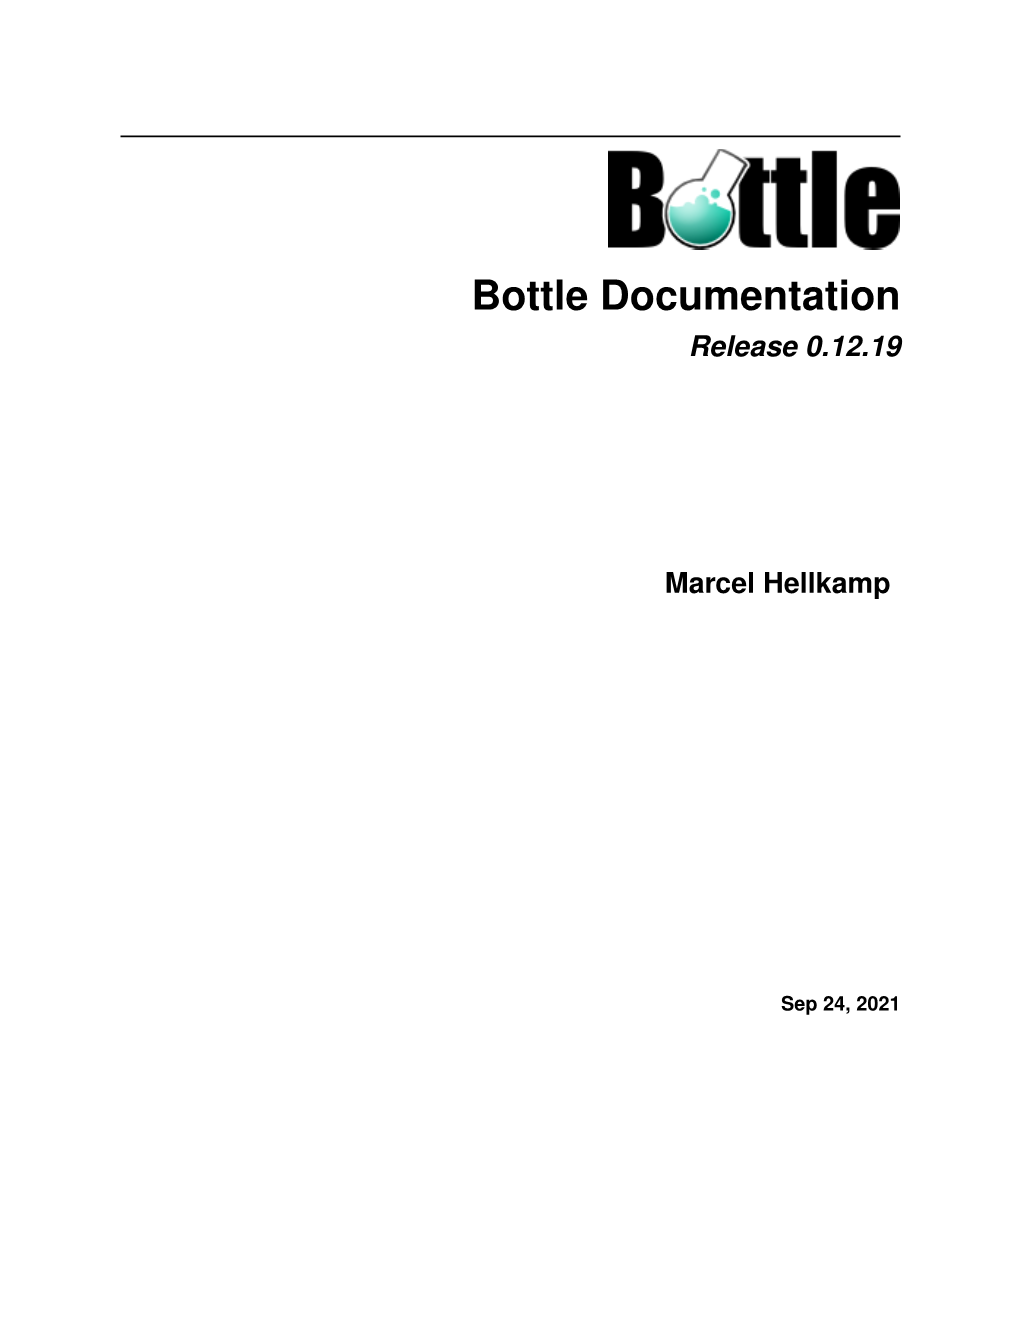 Bottle Documentation Release 0.12.19